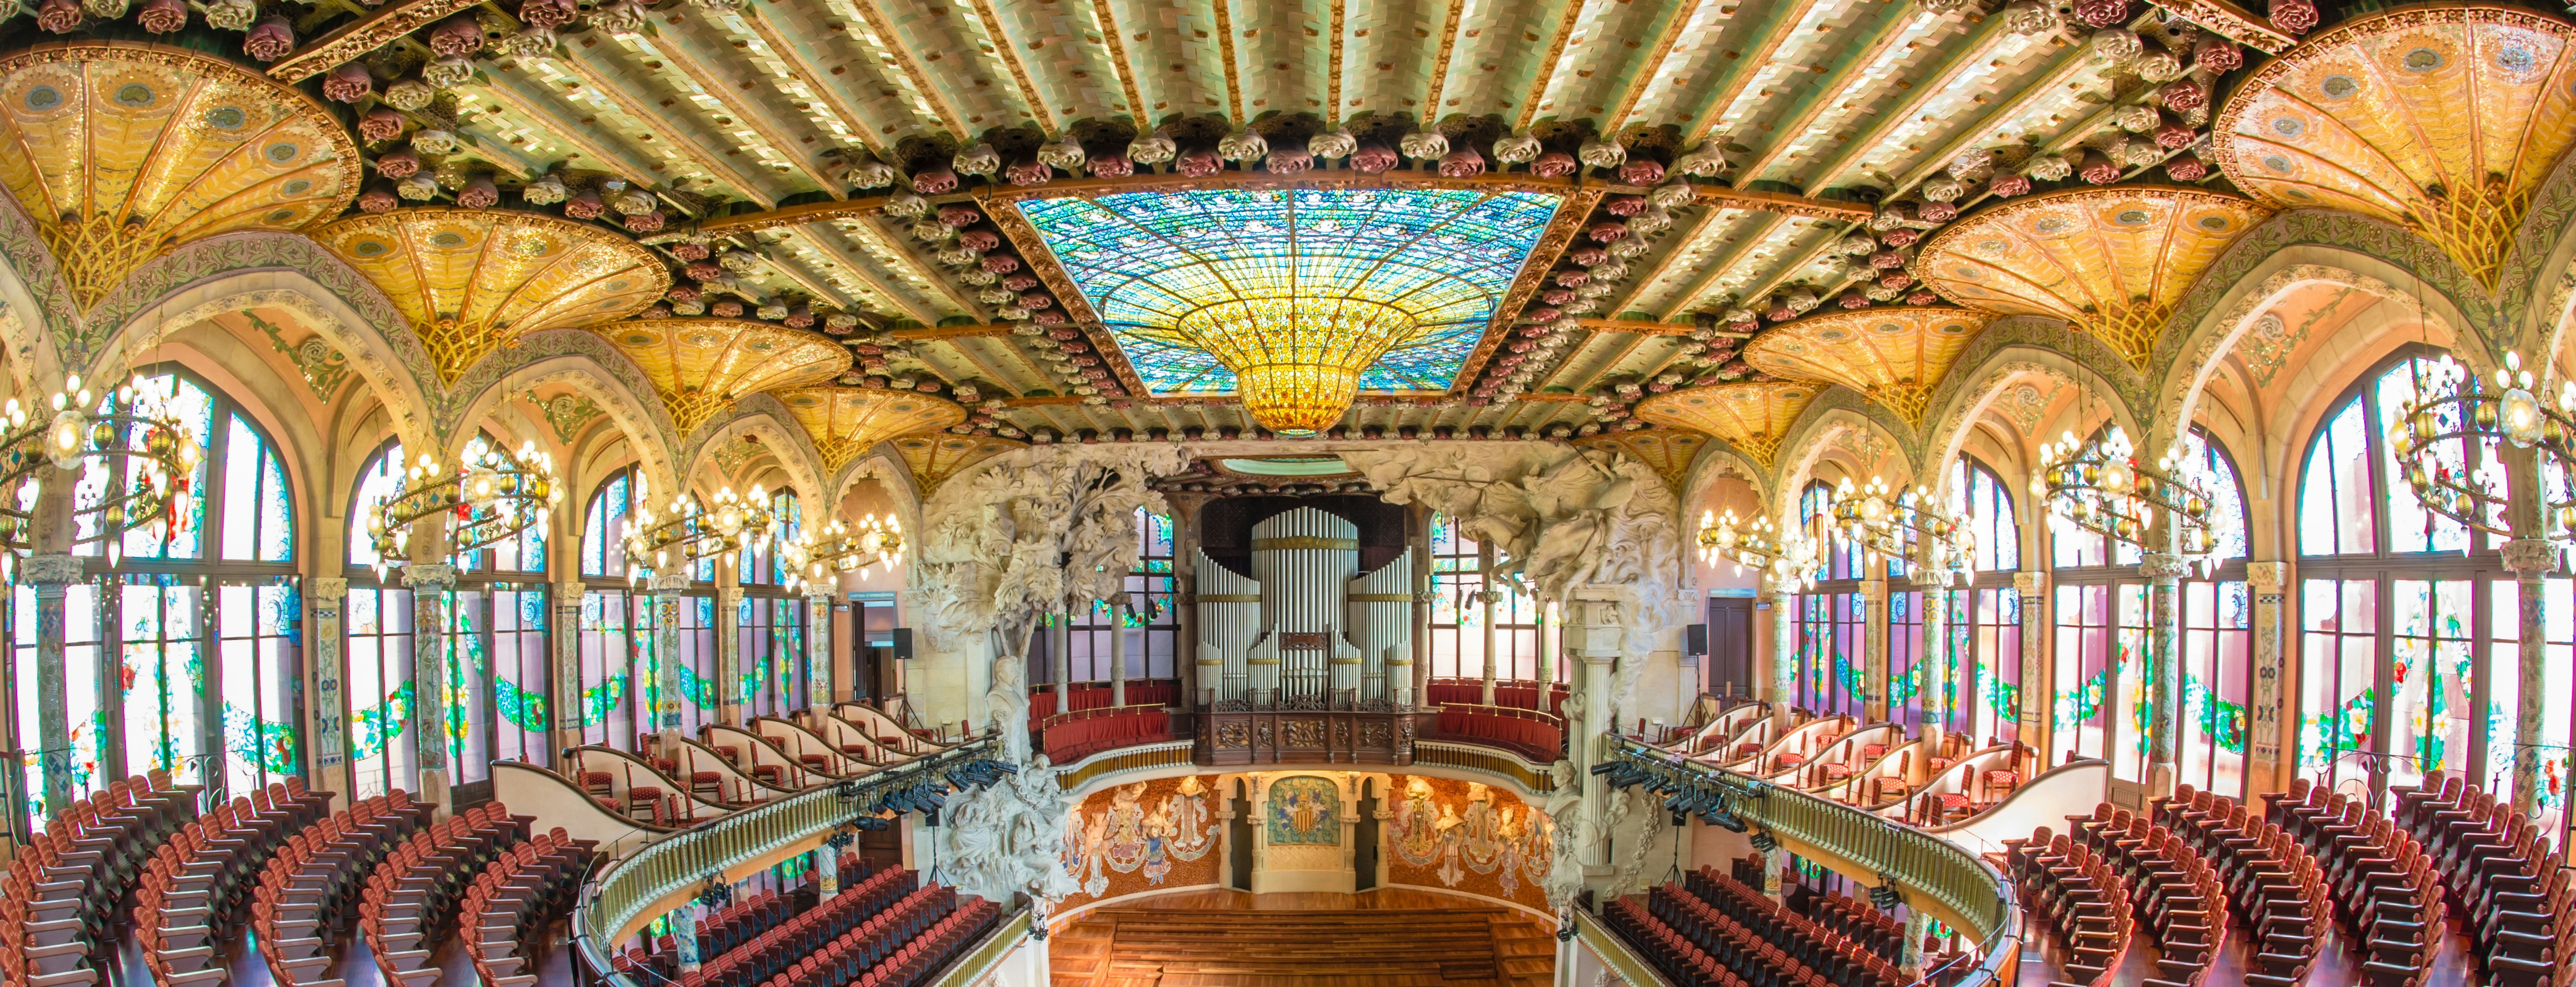 Сайт дворец музыки. Дворец каталонской музыки, Испания, Барселона.. Концертный зал в Барселоне. Palau de la música Catalana Барселона. Дворец каталонской музыки, Барселона, 1905-1908 гг..